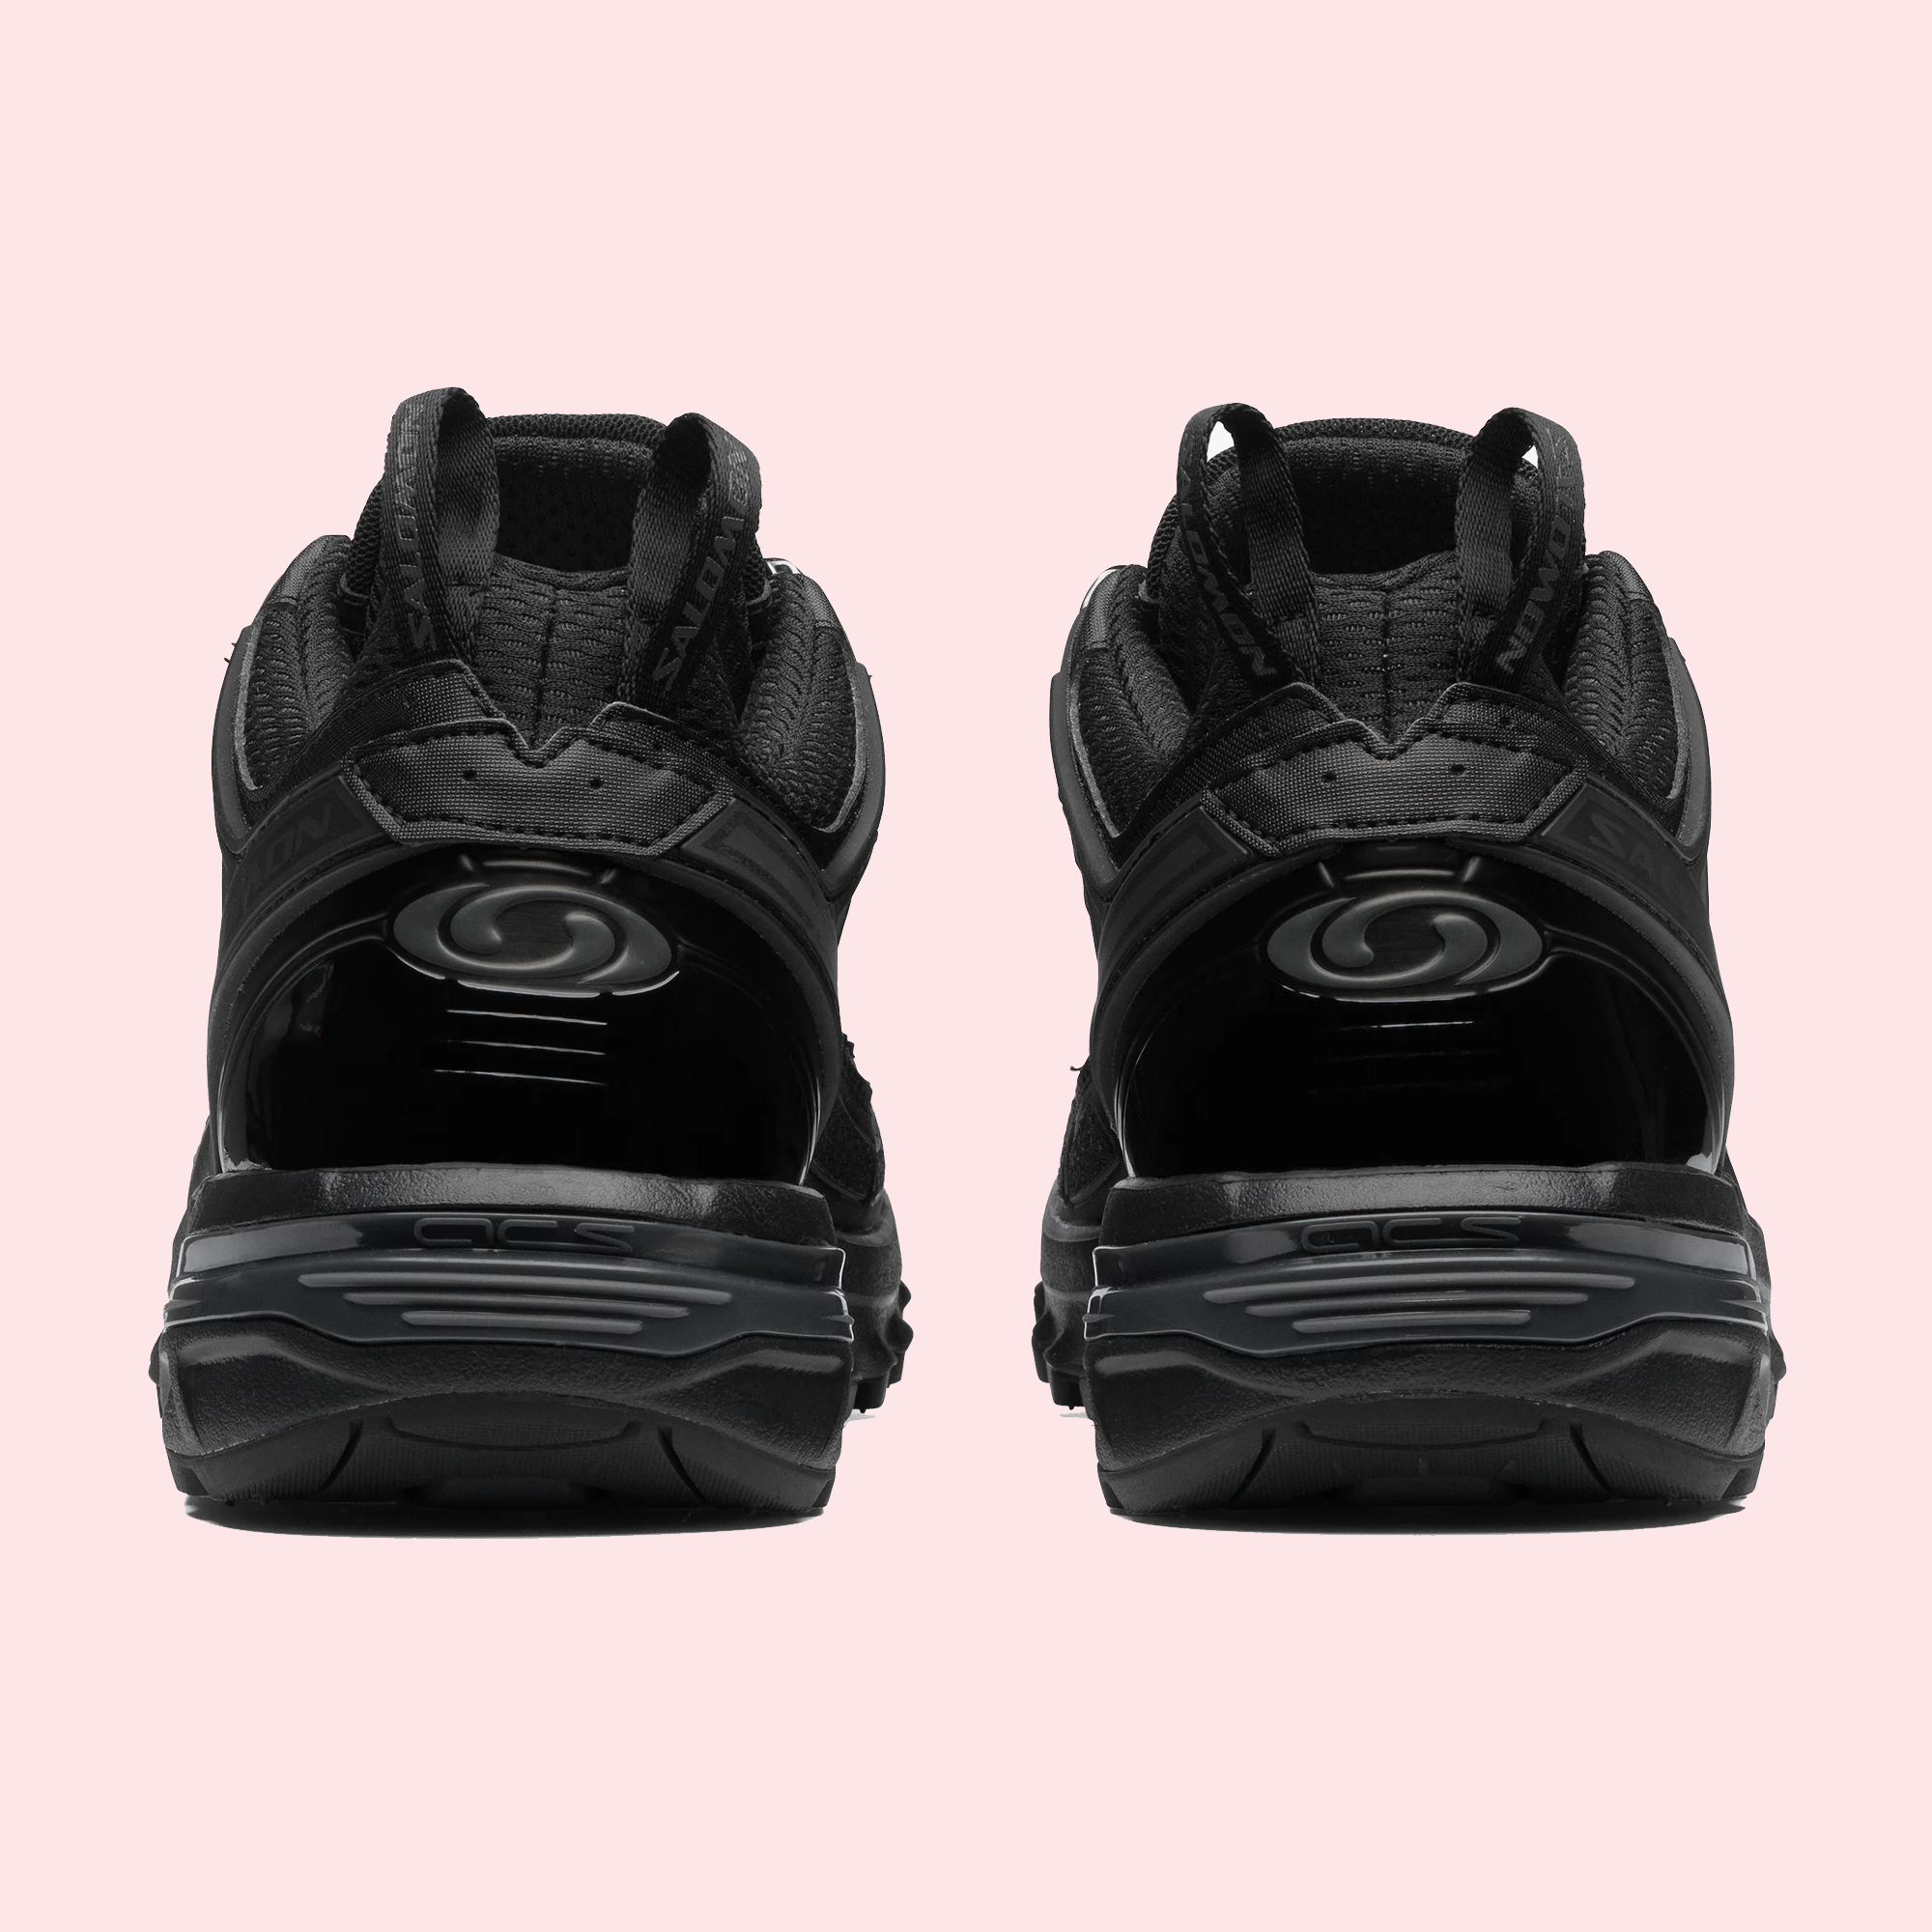 Salomon sneakers ACS PRO Black/Black/Black back